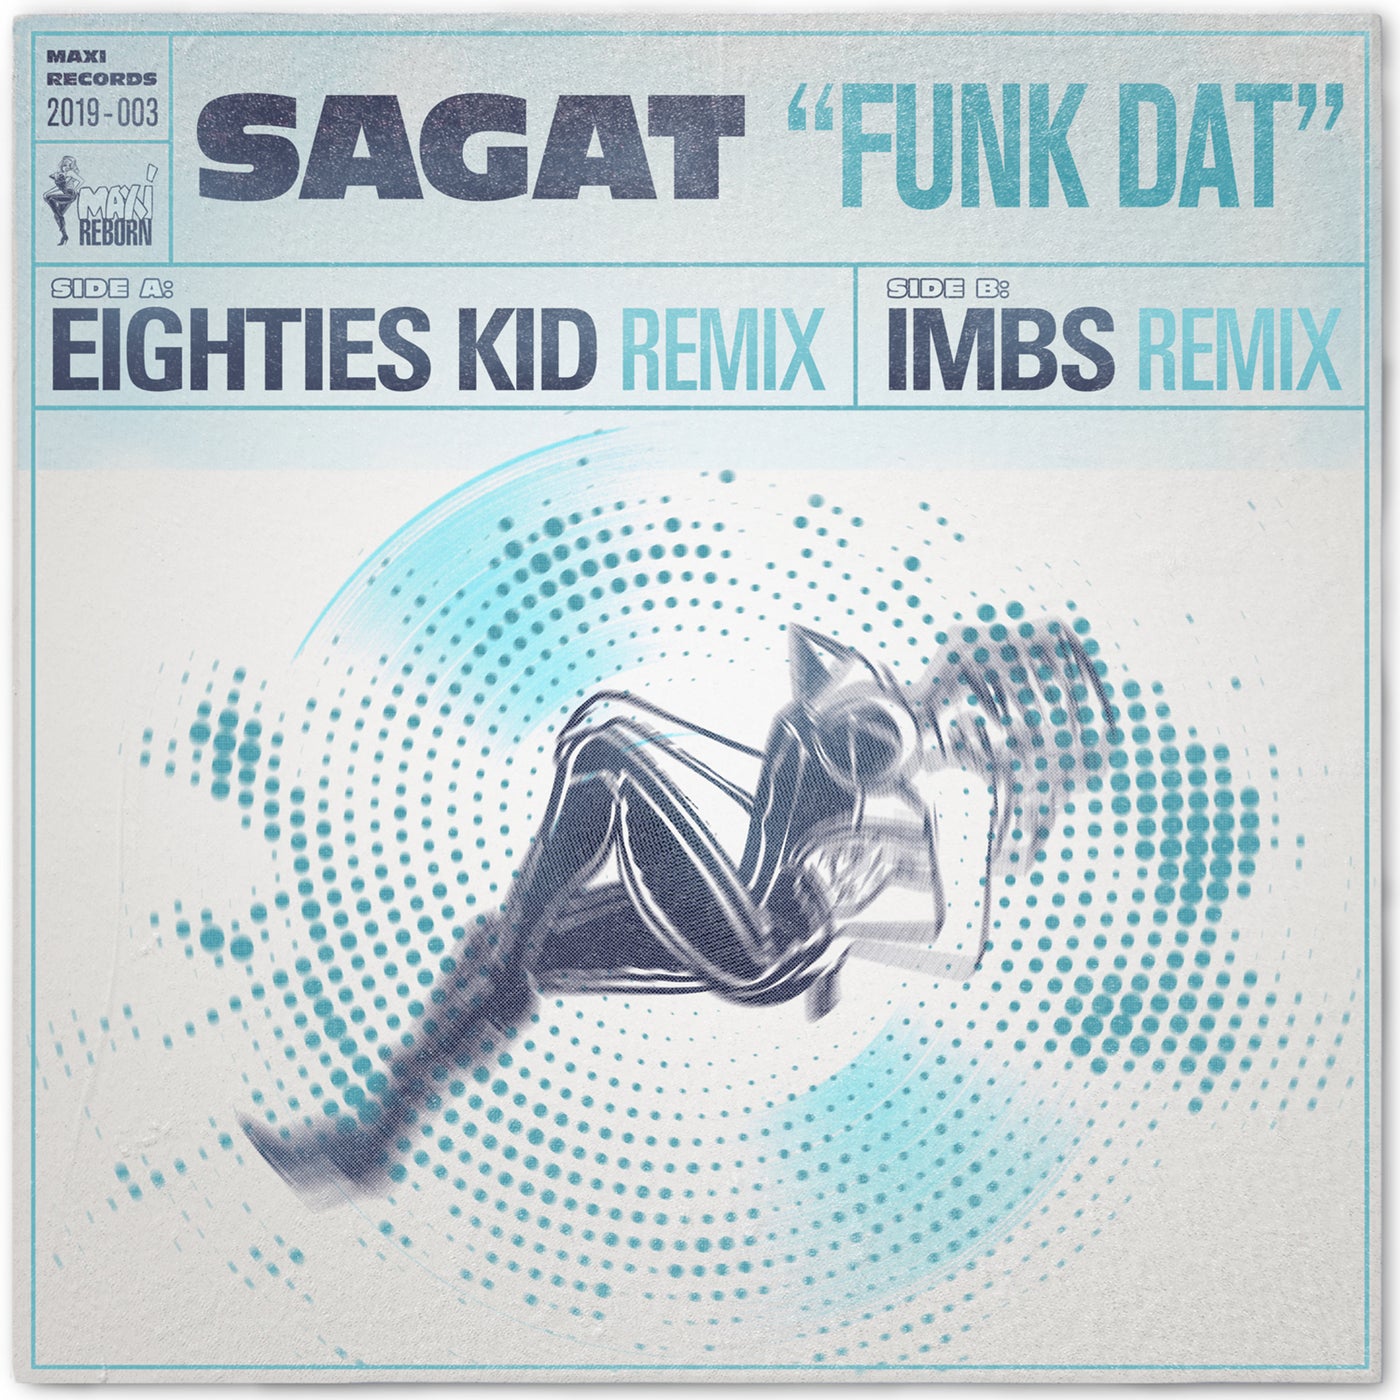 Funk Dat - The Eighties Kid & IMBS Remixes